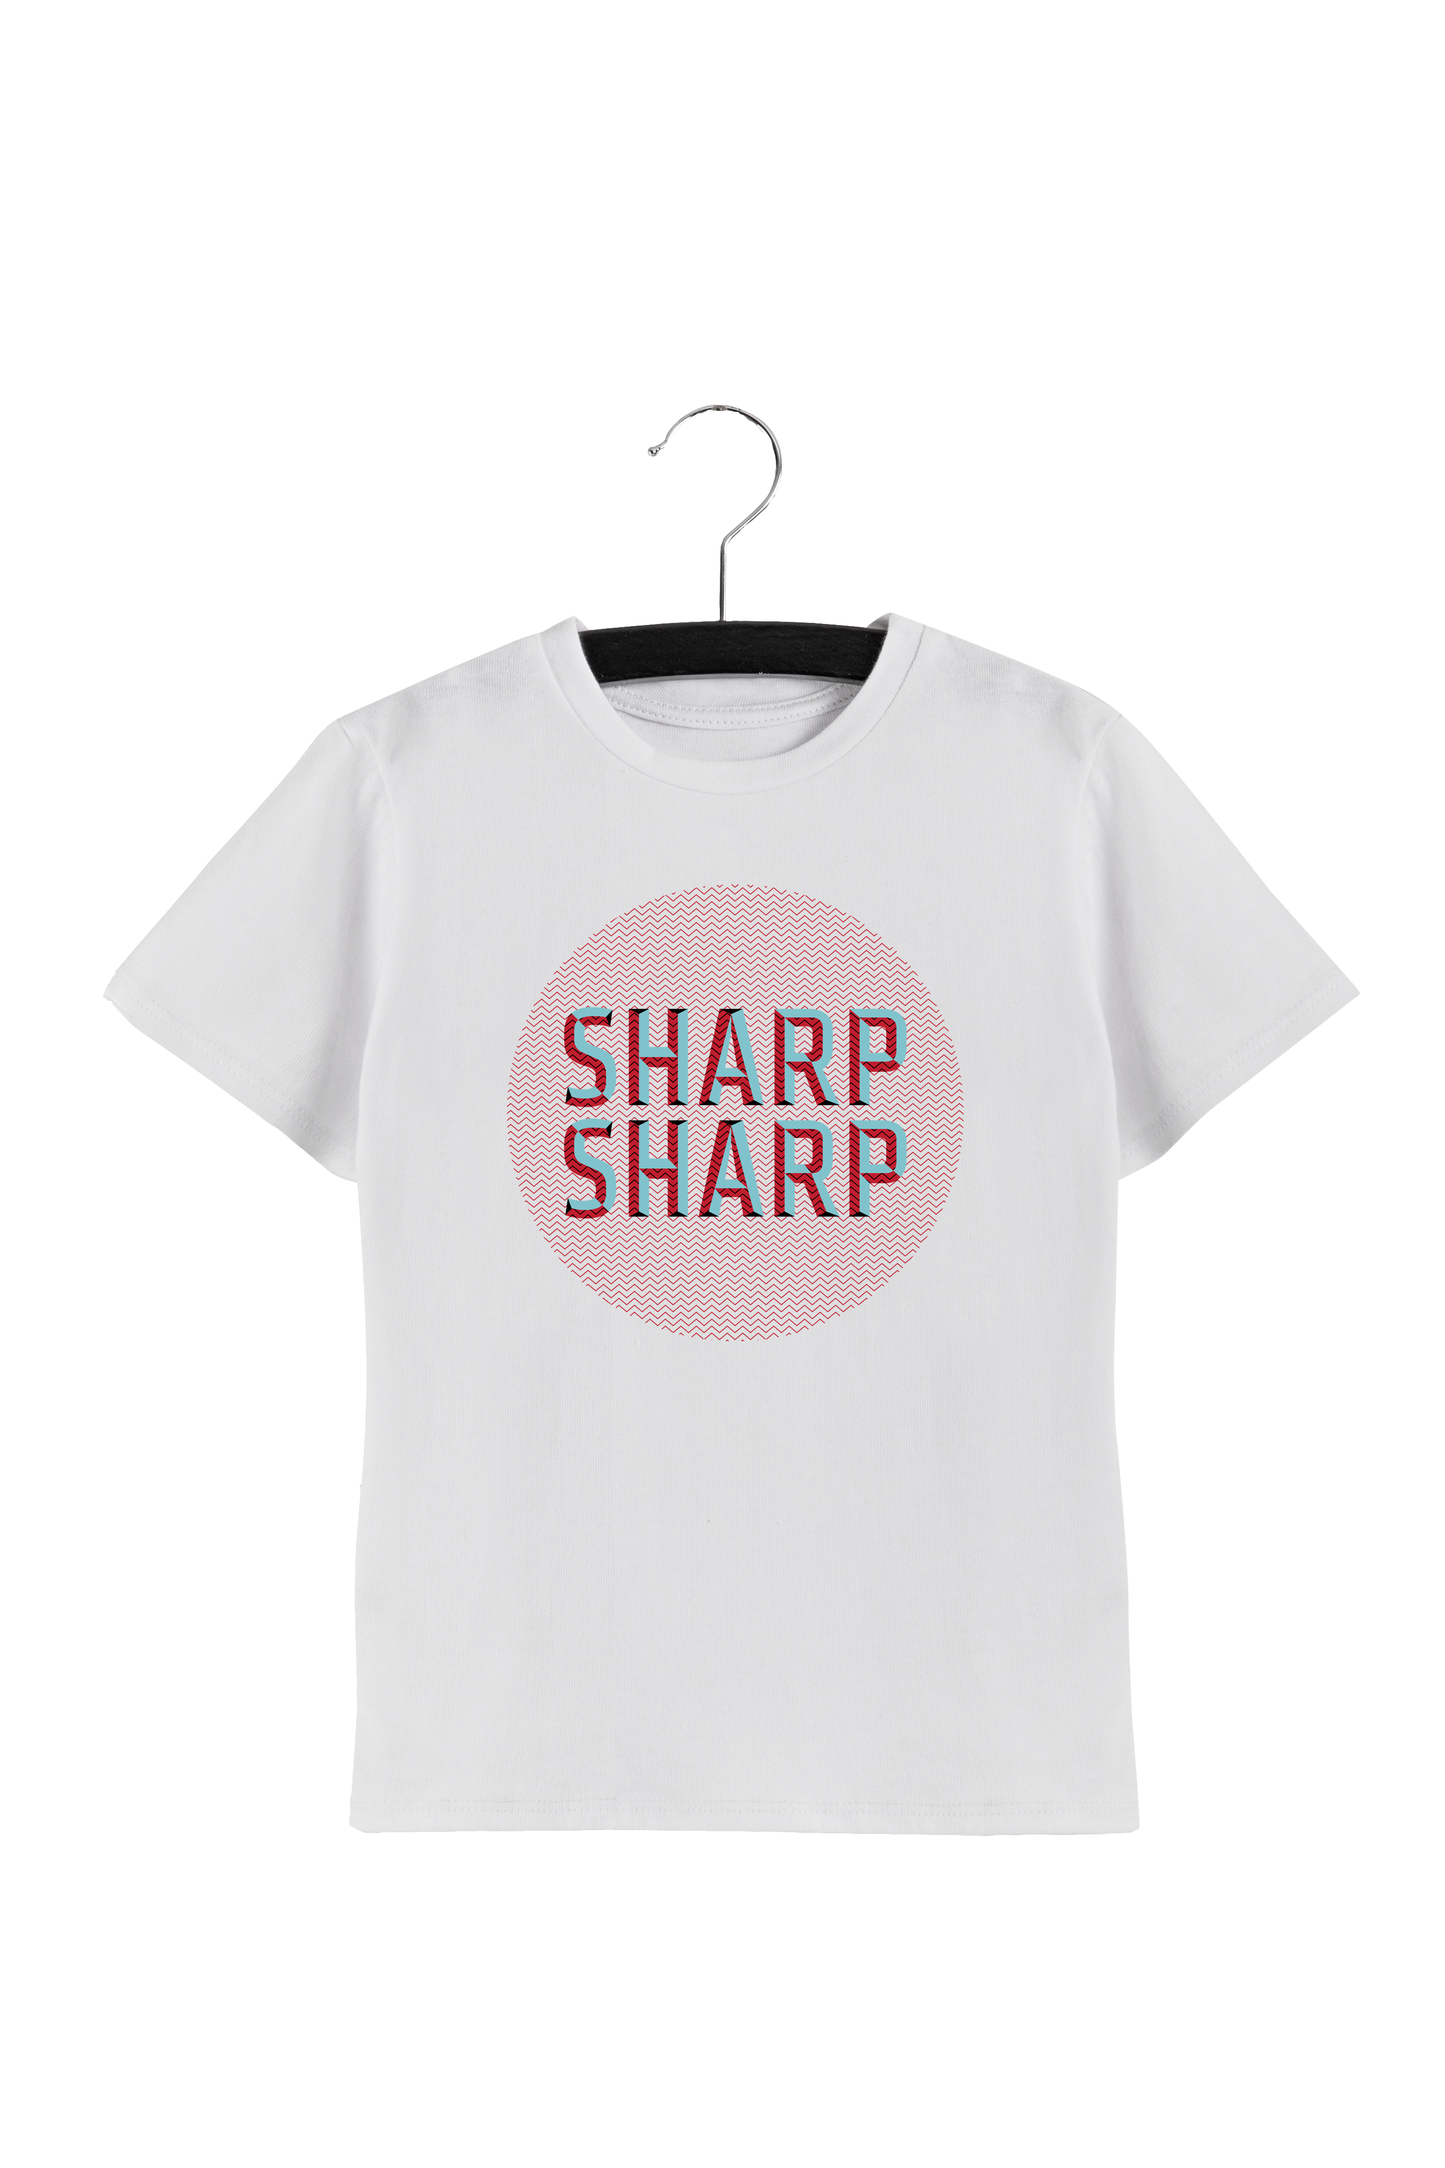 SHARP SHARP KIDS TEE